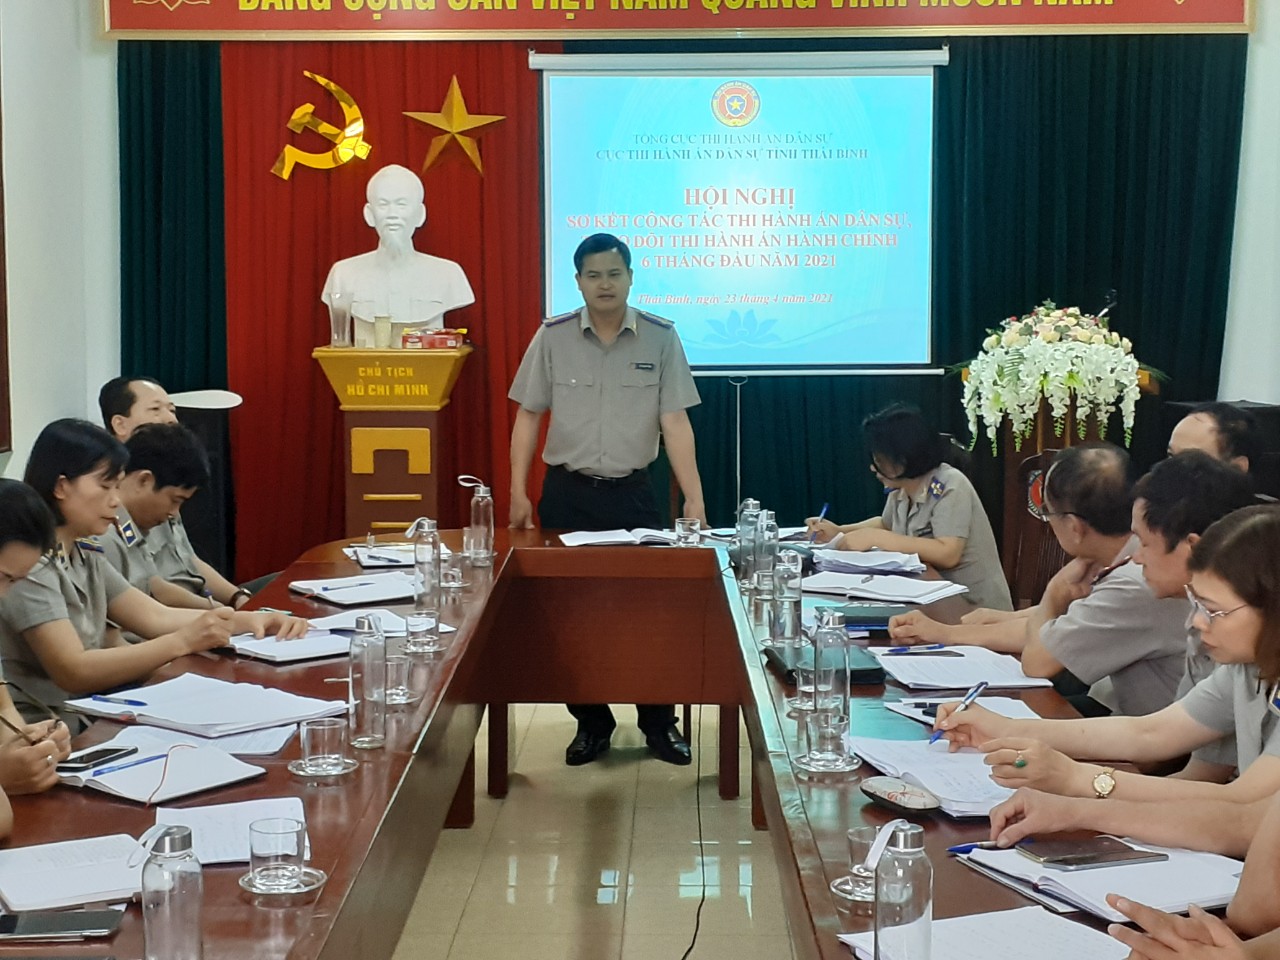 Cục Thi hành án dân sự tỉnh Thái Bình tổ chức Hội nghị triển khai công tác thi hành án dân sự năm 2019